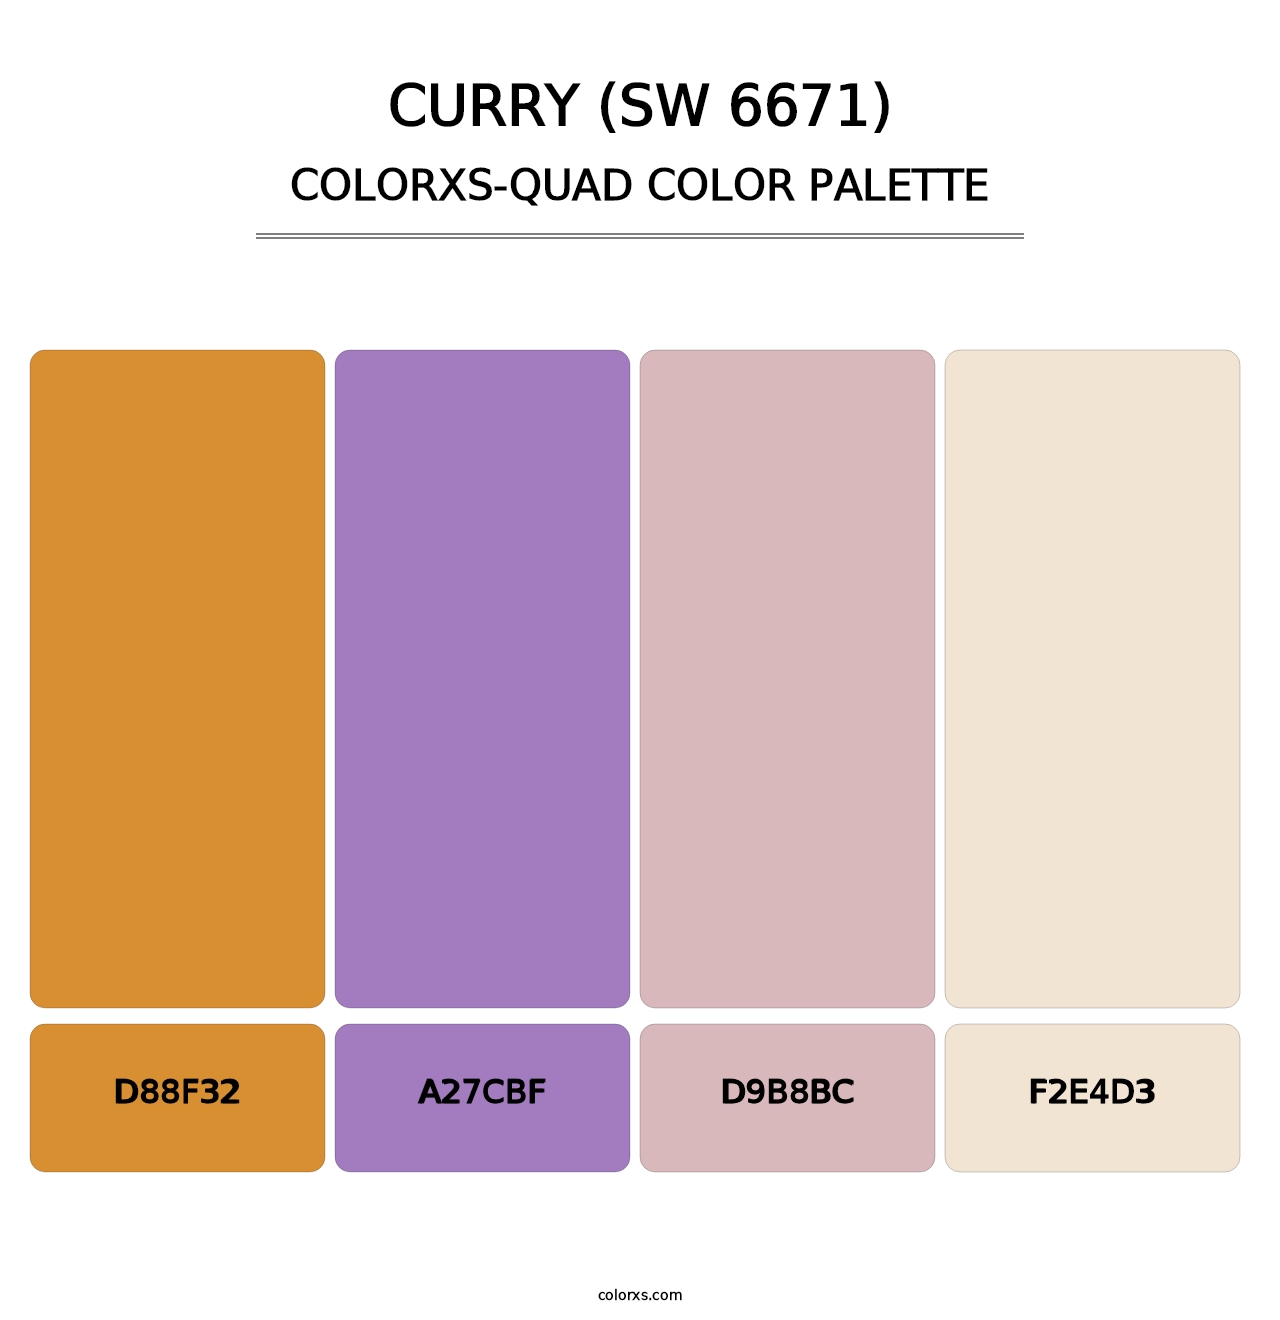 Curry (SW 6671) - Colorxs Quad Palette